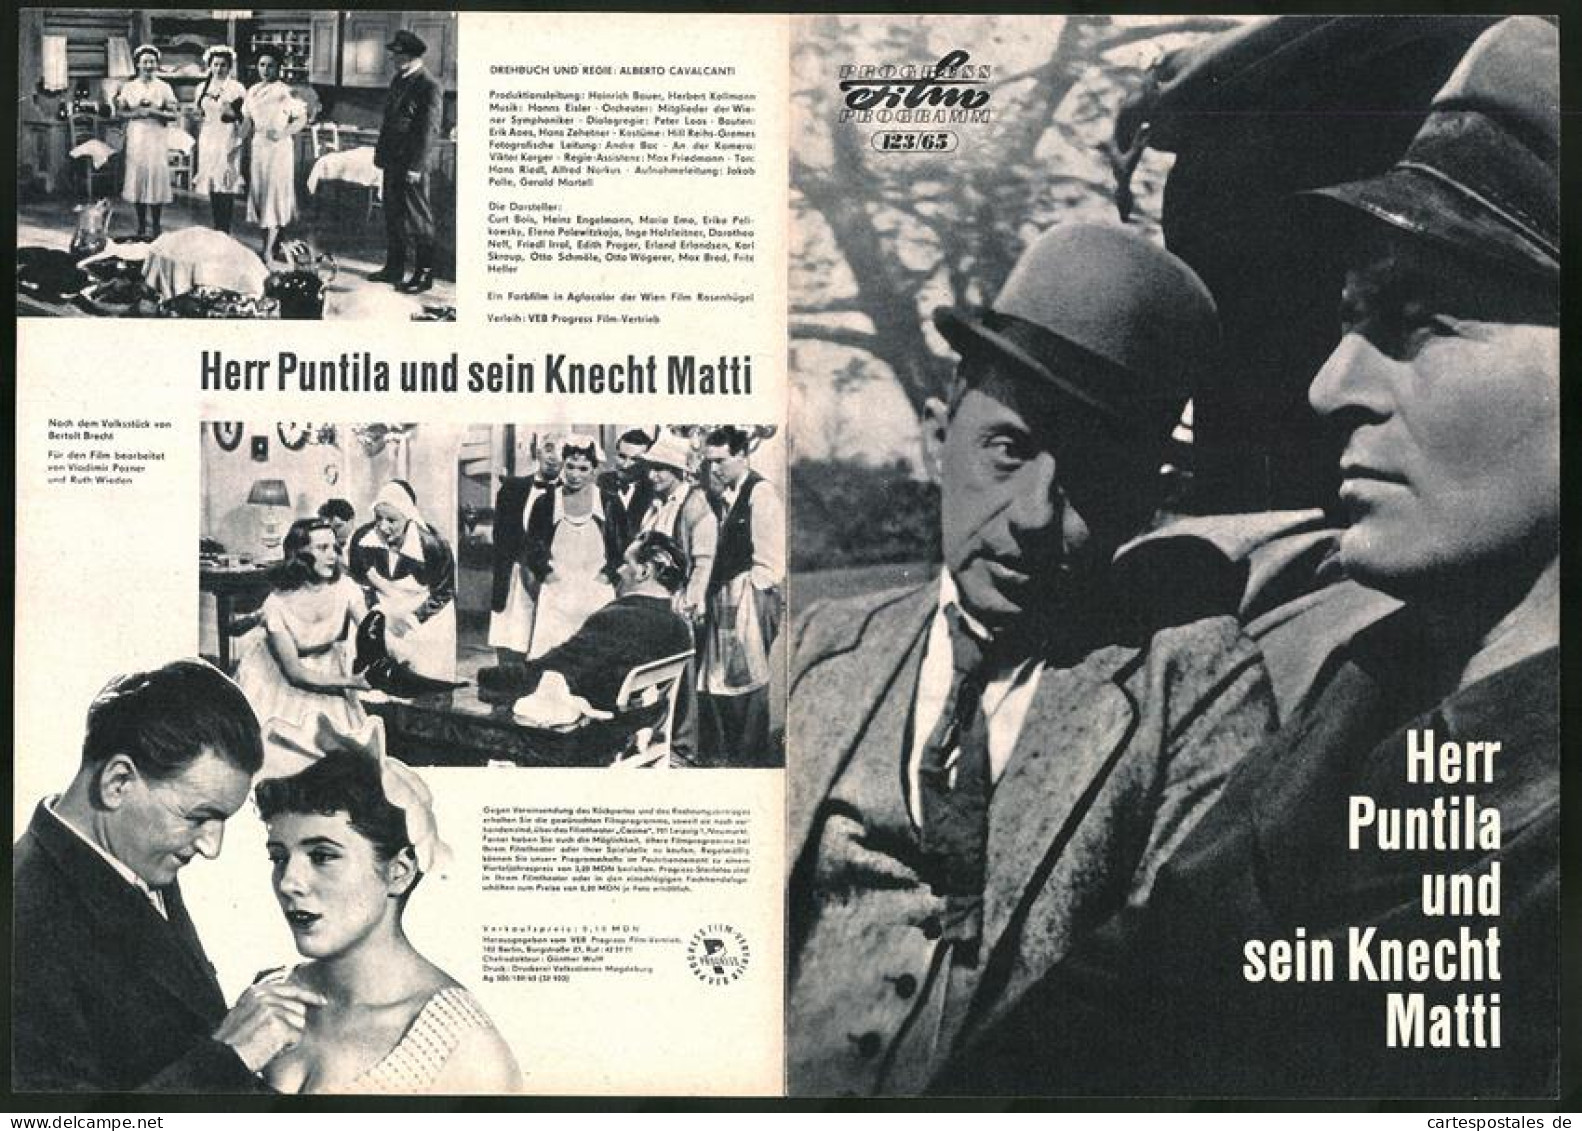 Filmprogramm PFP Nr. 123 /65, Herr Puntila Und Sein Knecht Matti, Curt Bois, Heinz Engelmann, Regie: Alberto Cavalcanti  - Magazines